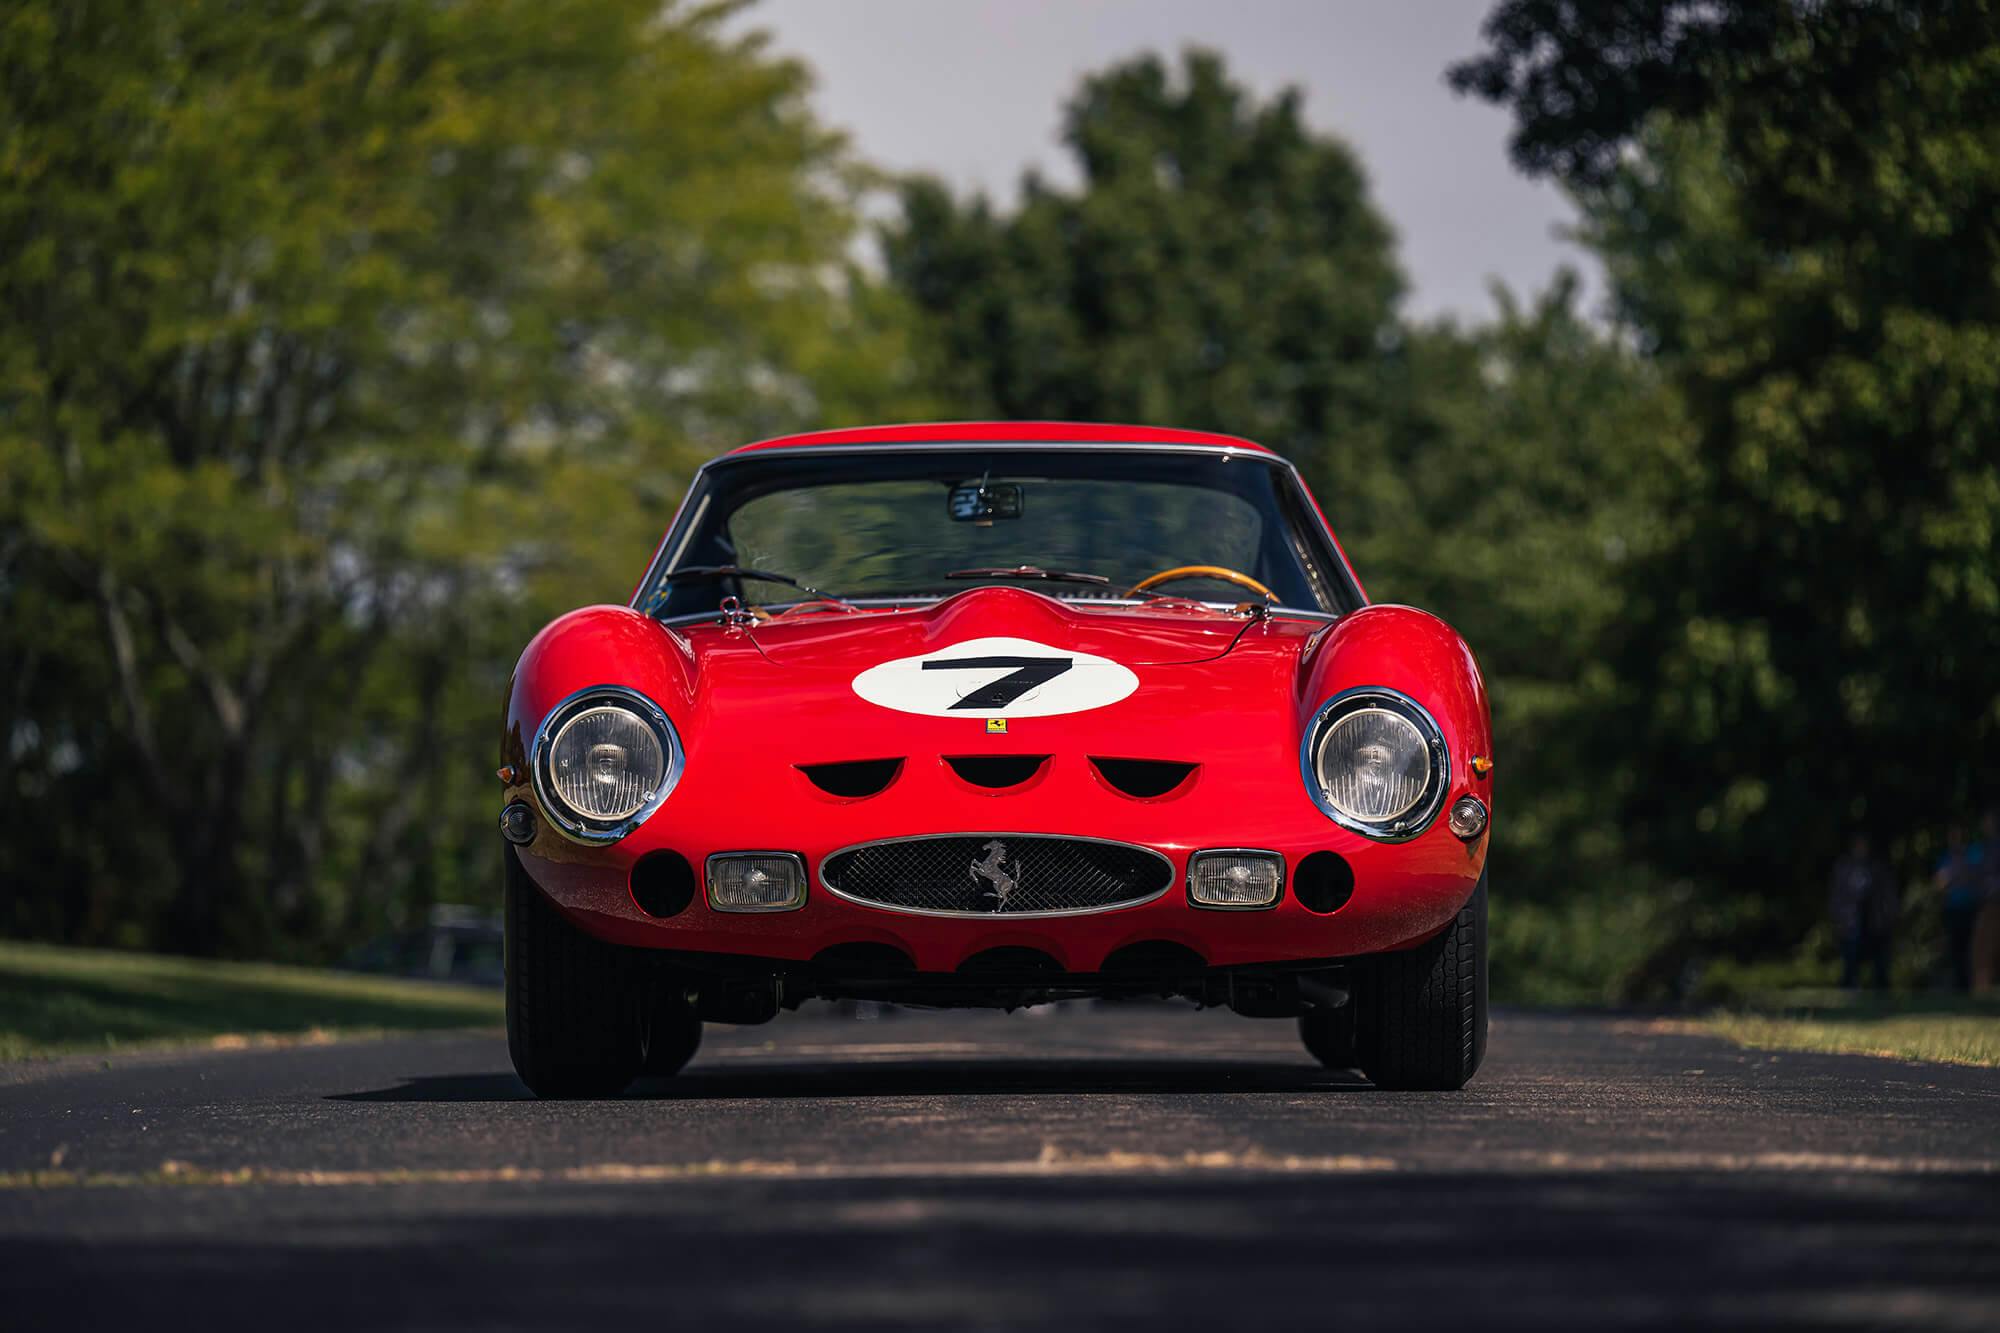 Rarest Cars in The World: Ferrari 250 GTO, Porsche 917 & More